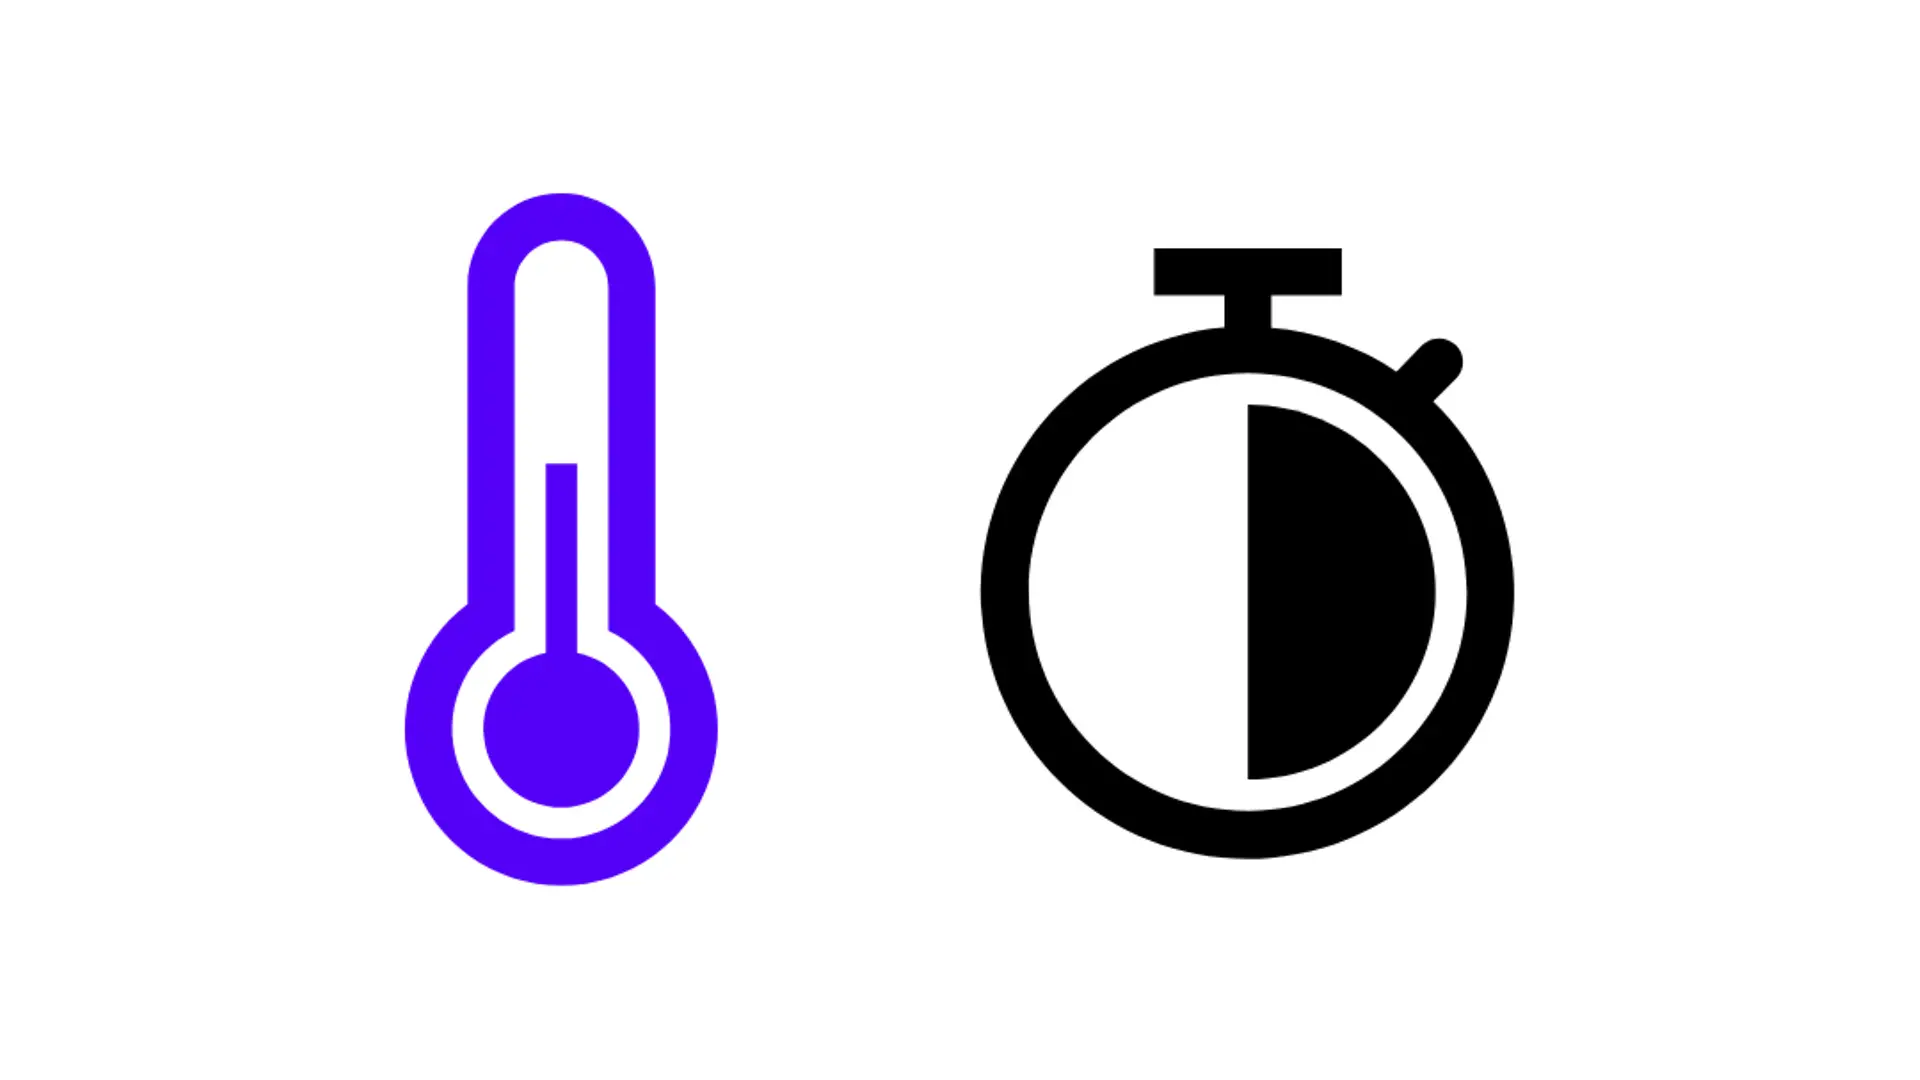 símbolo azul para símbolo de termômetro e relógio, meia hora